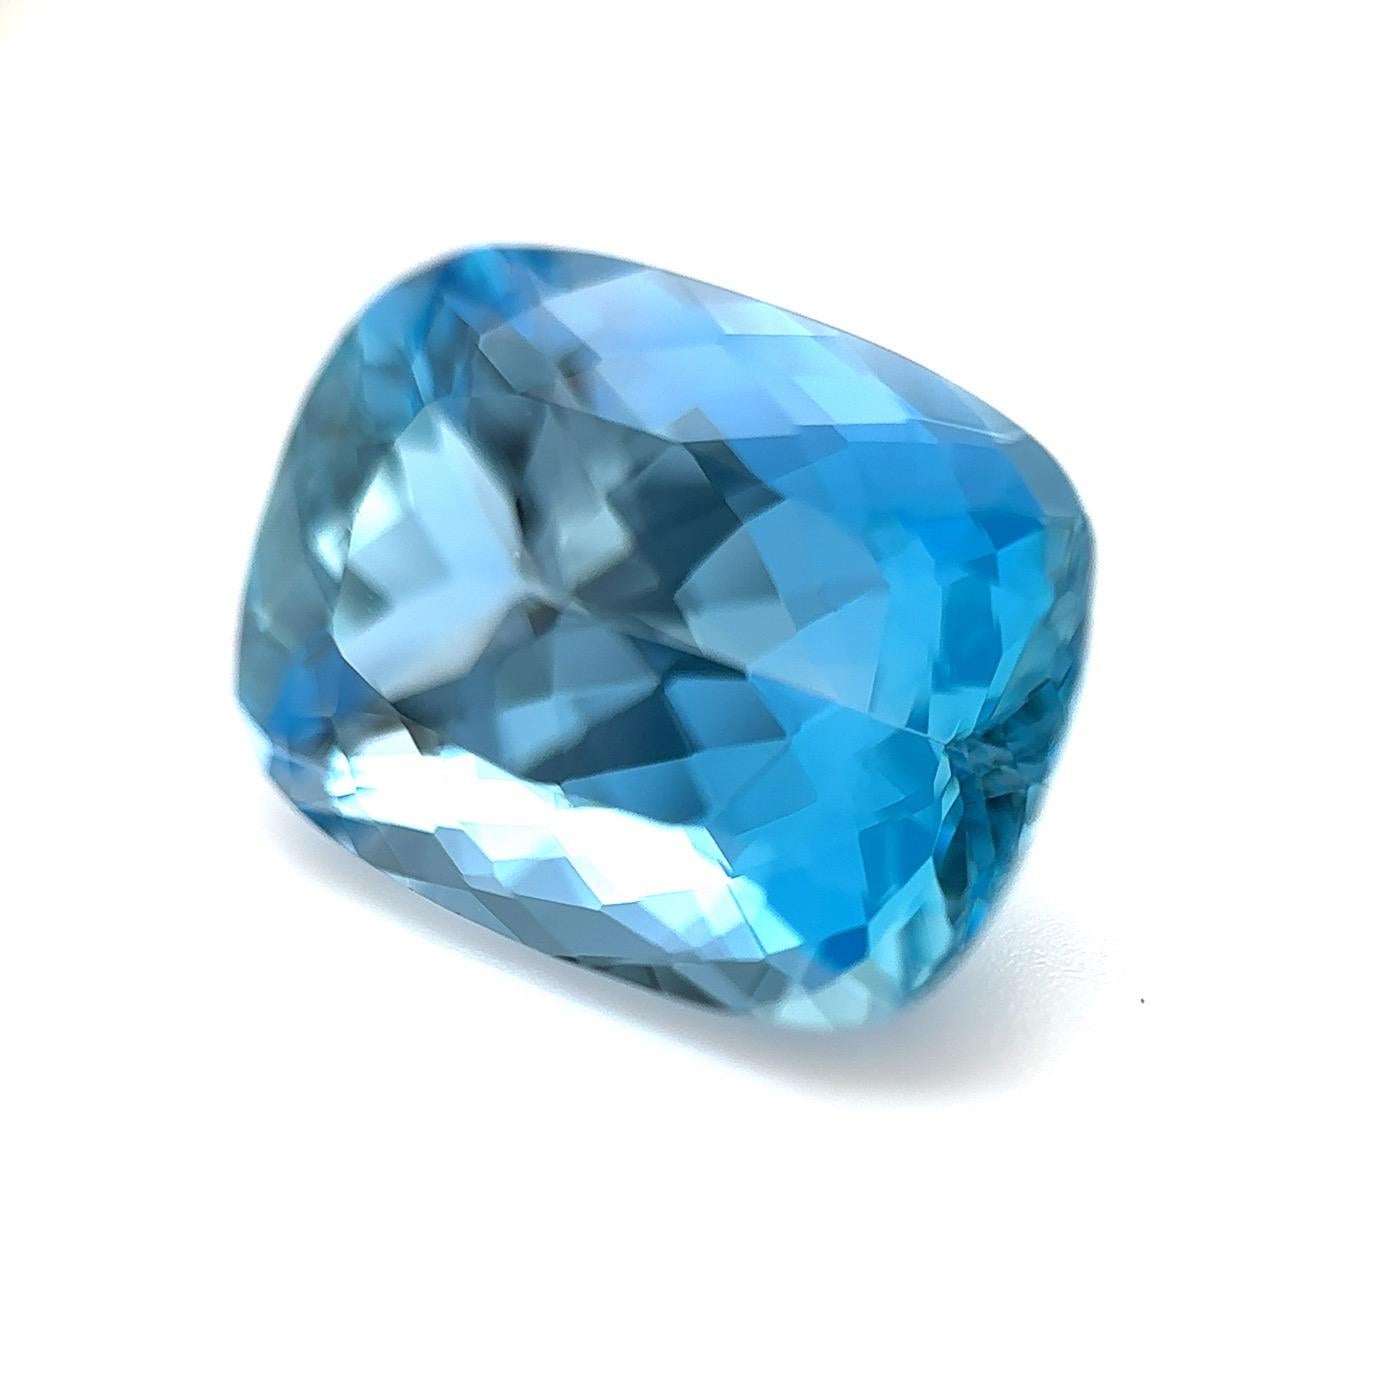 6 carat aquamarine